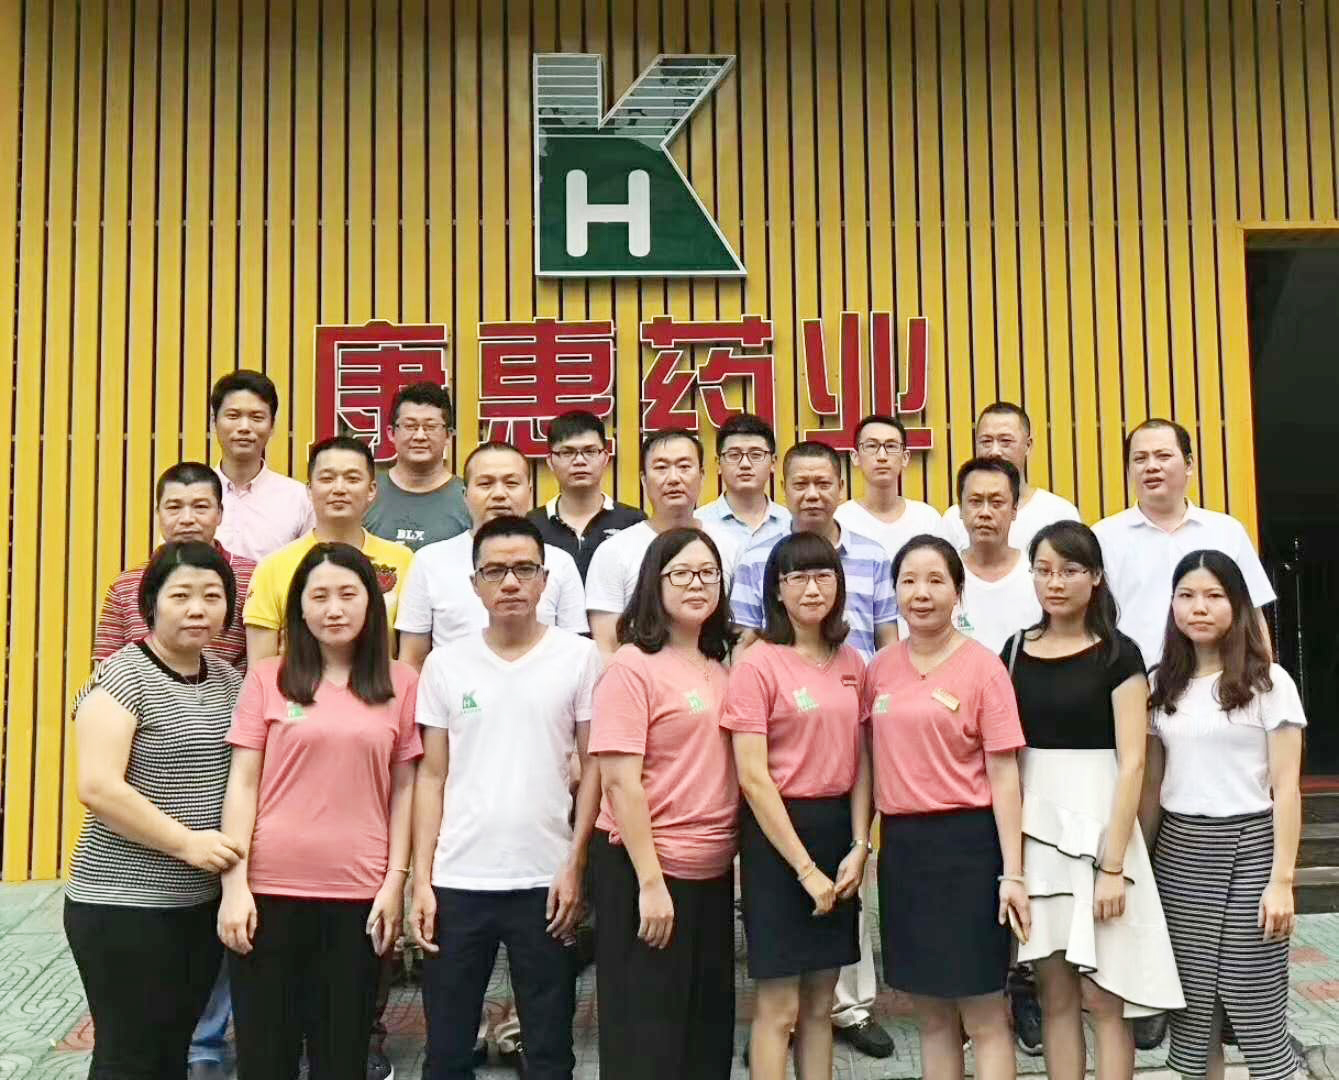 热烈祝贺广州民信药业连锁有限公司与潮州市康惠医药有限公司签署《股权互持协议》成功进行股权合作。